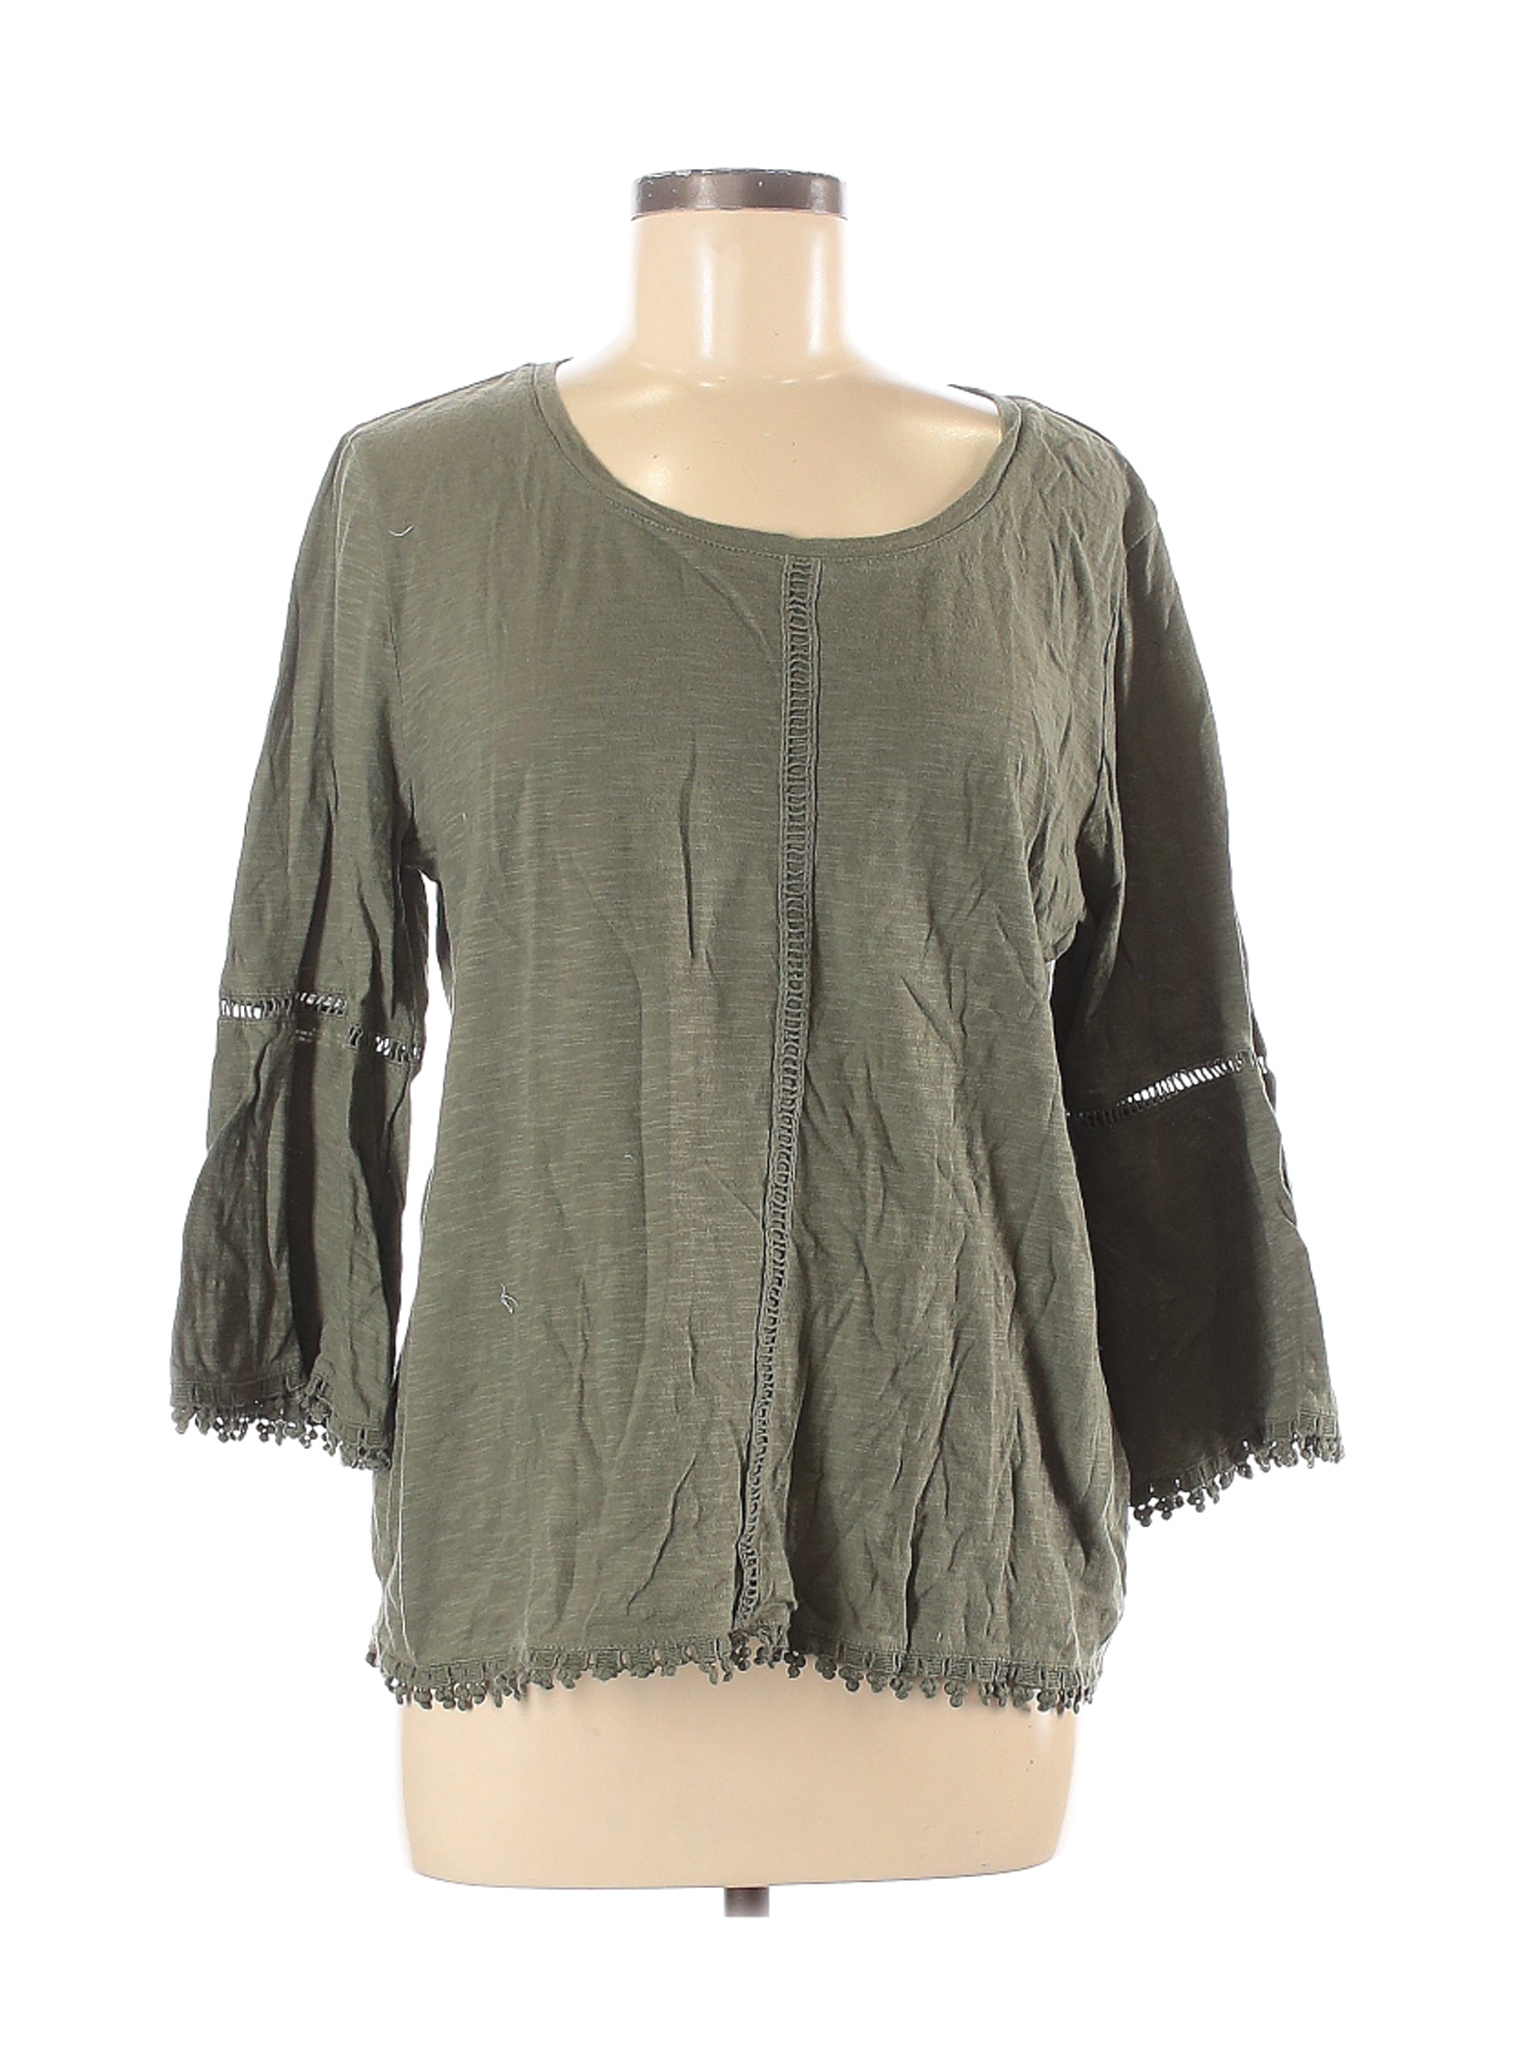 Assorted Brands Women Green Long Sleeve Top M | eBay